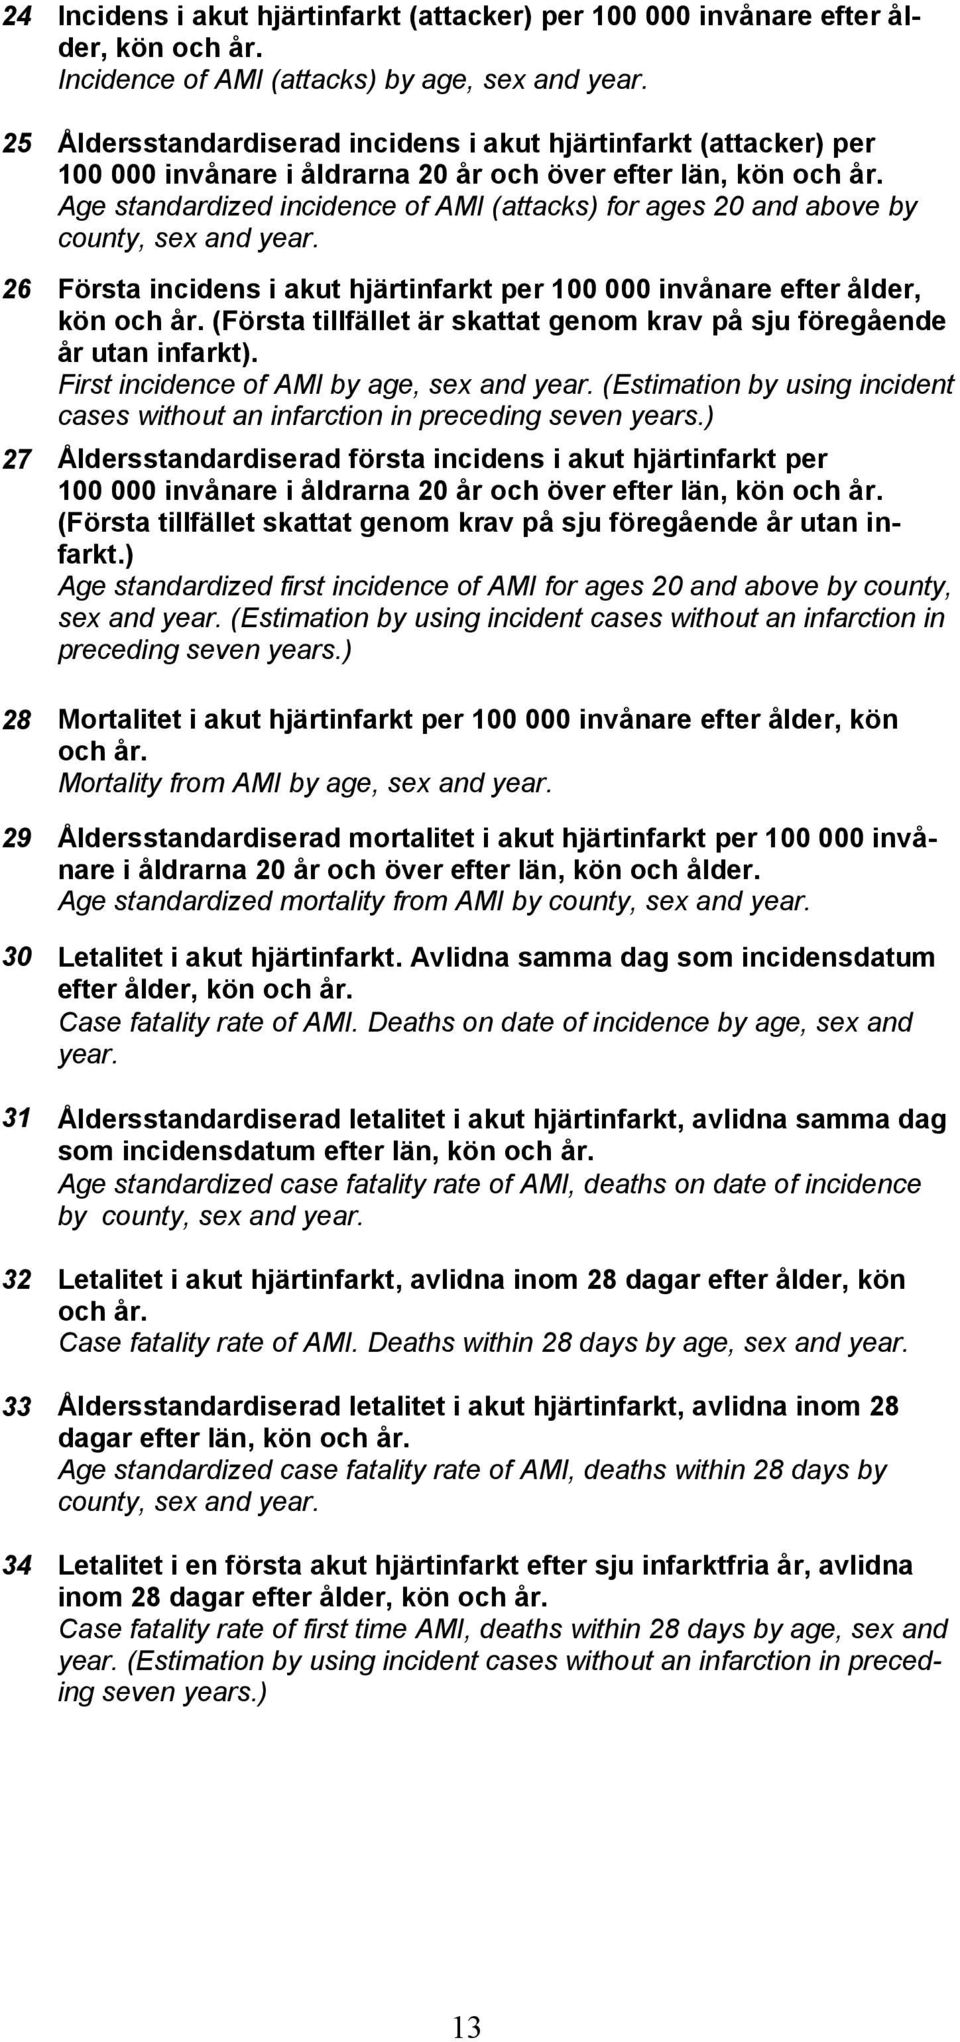 Age standardized incidence of AMI (attacks) for ages 20 and above by county, sex and year. 26 Första incidens i akut hjärtinfarkt per 100 000 invånare efter ålder, kön och år.